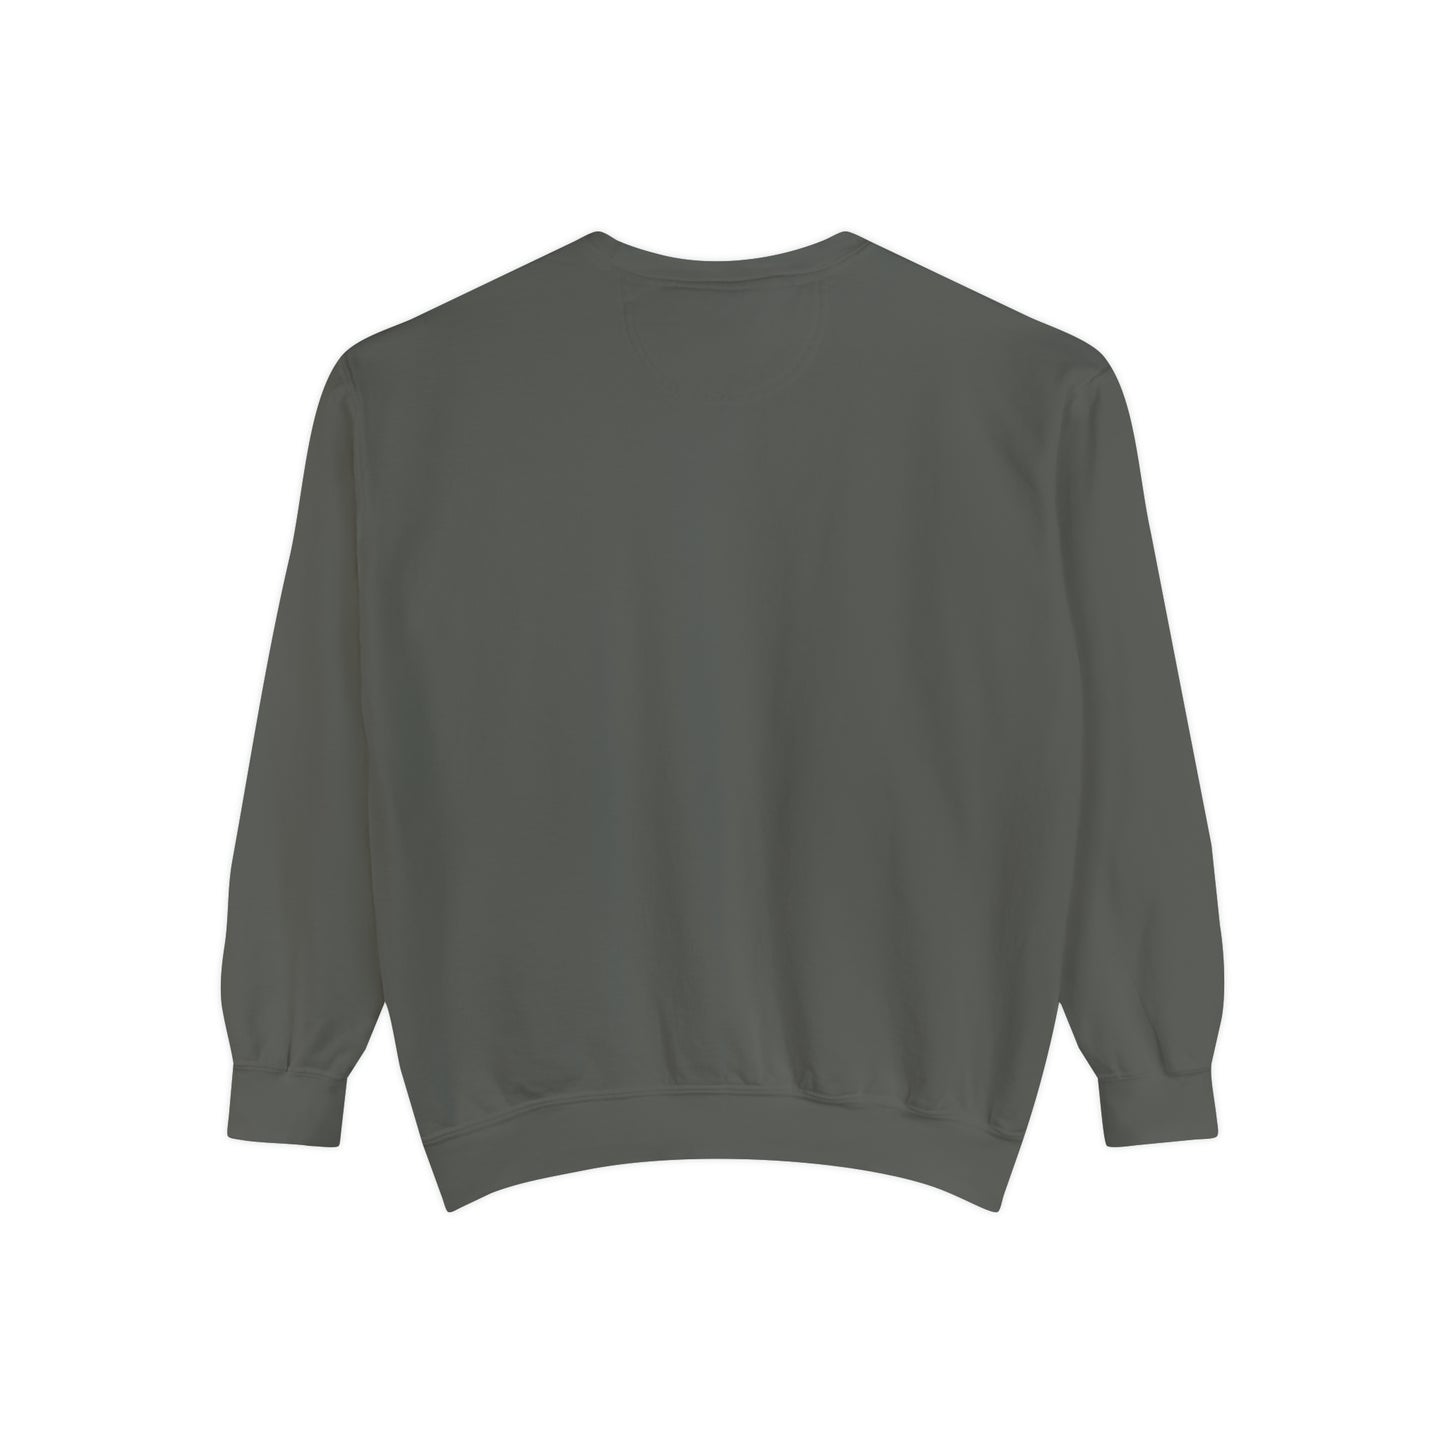 Gaslighter Sweatshirt